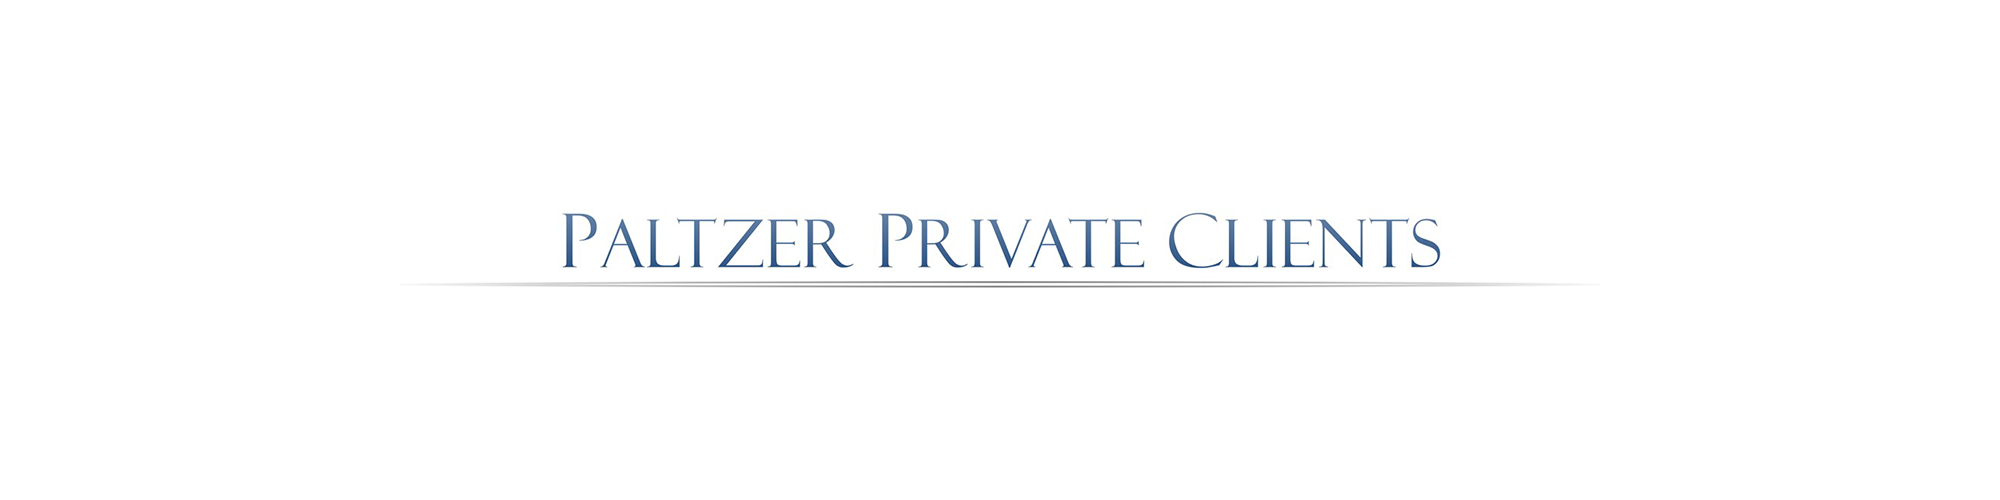 Paltzer Private Clients